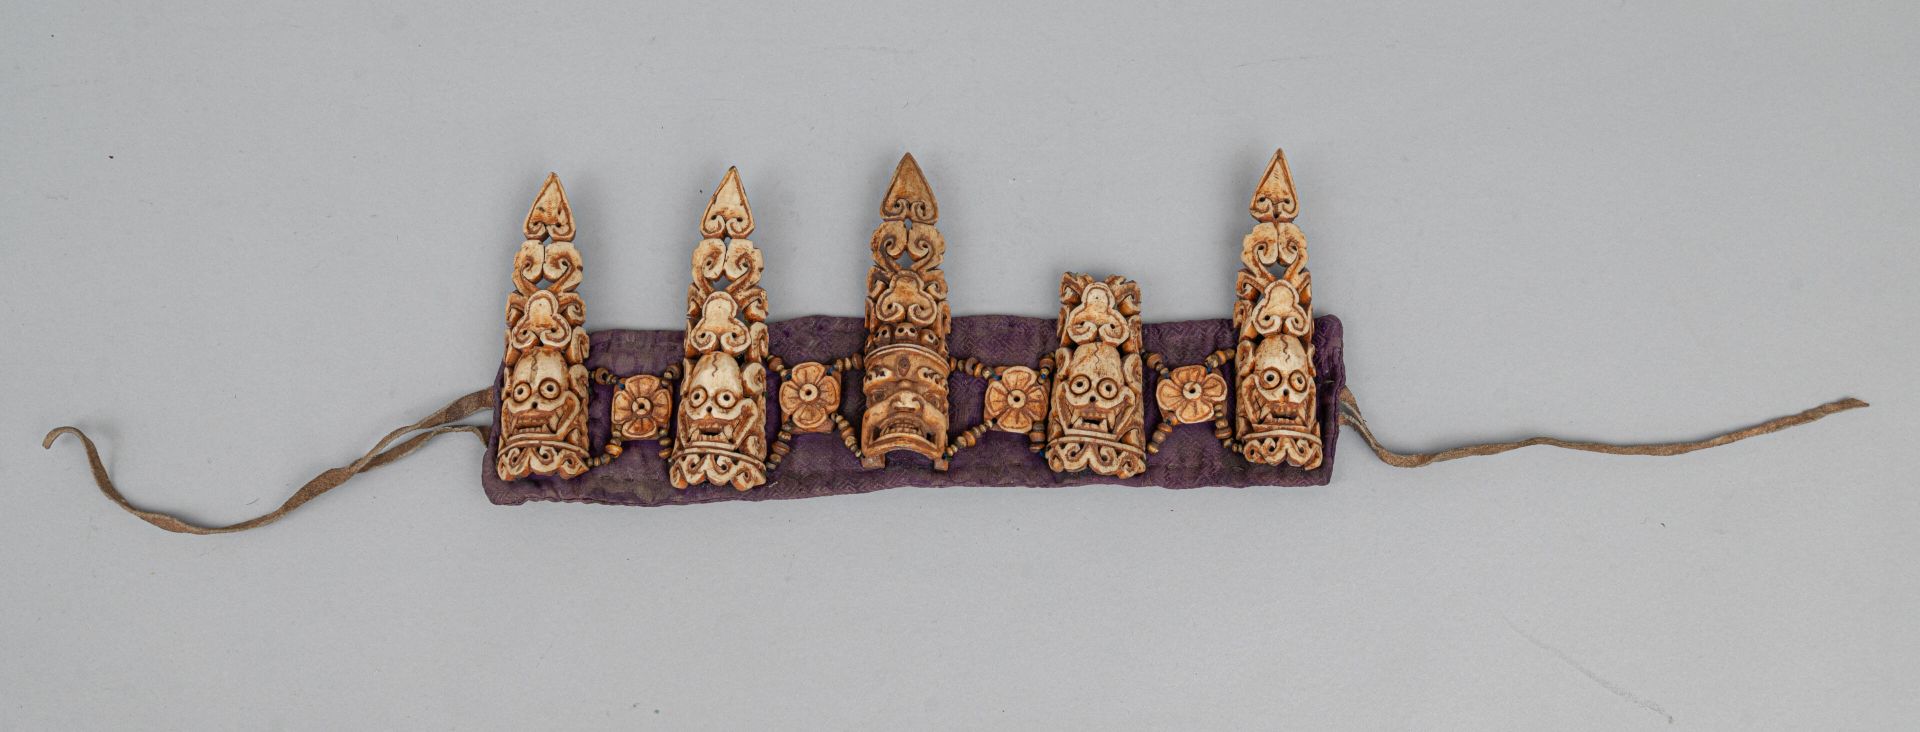 Null 祭祀骨冠，西藏，19 世纪末/20 世纪初
由五块大板组成，其中四块刻有头骨（citipati），第五块刻有神的面孔，所有板的上方都有卷轴，与四块刻有&hellip;